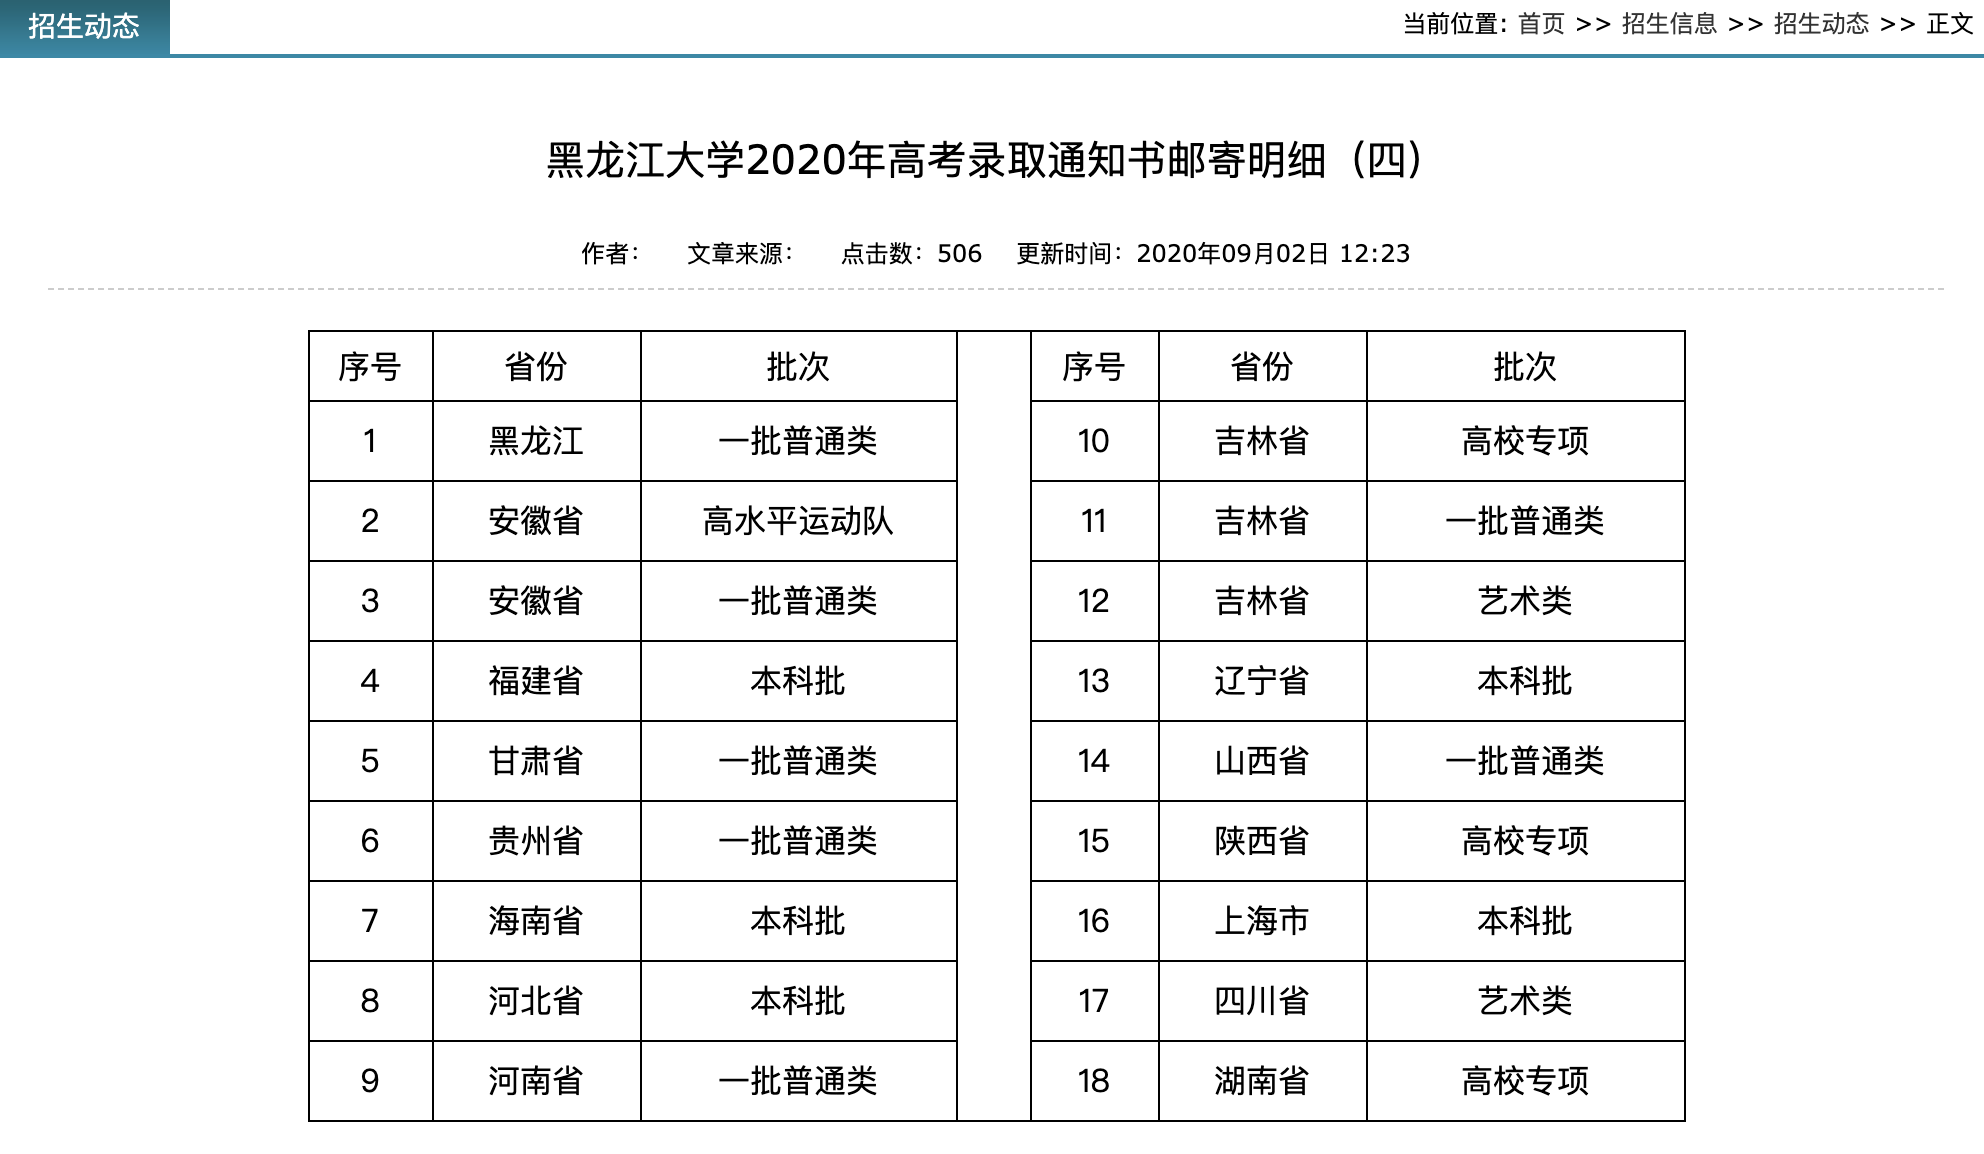 黑龙江大学2020年高考录取通知书邮寄明细